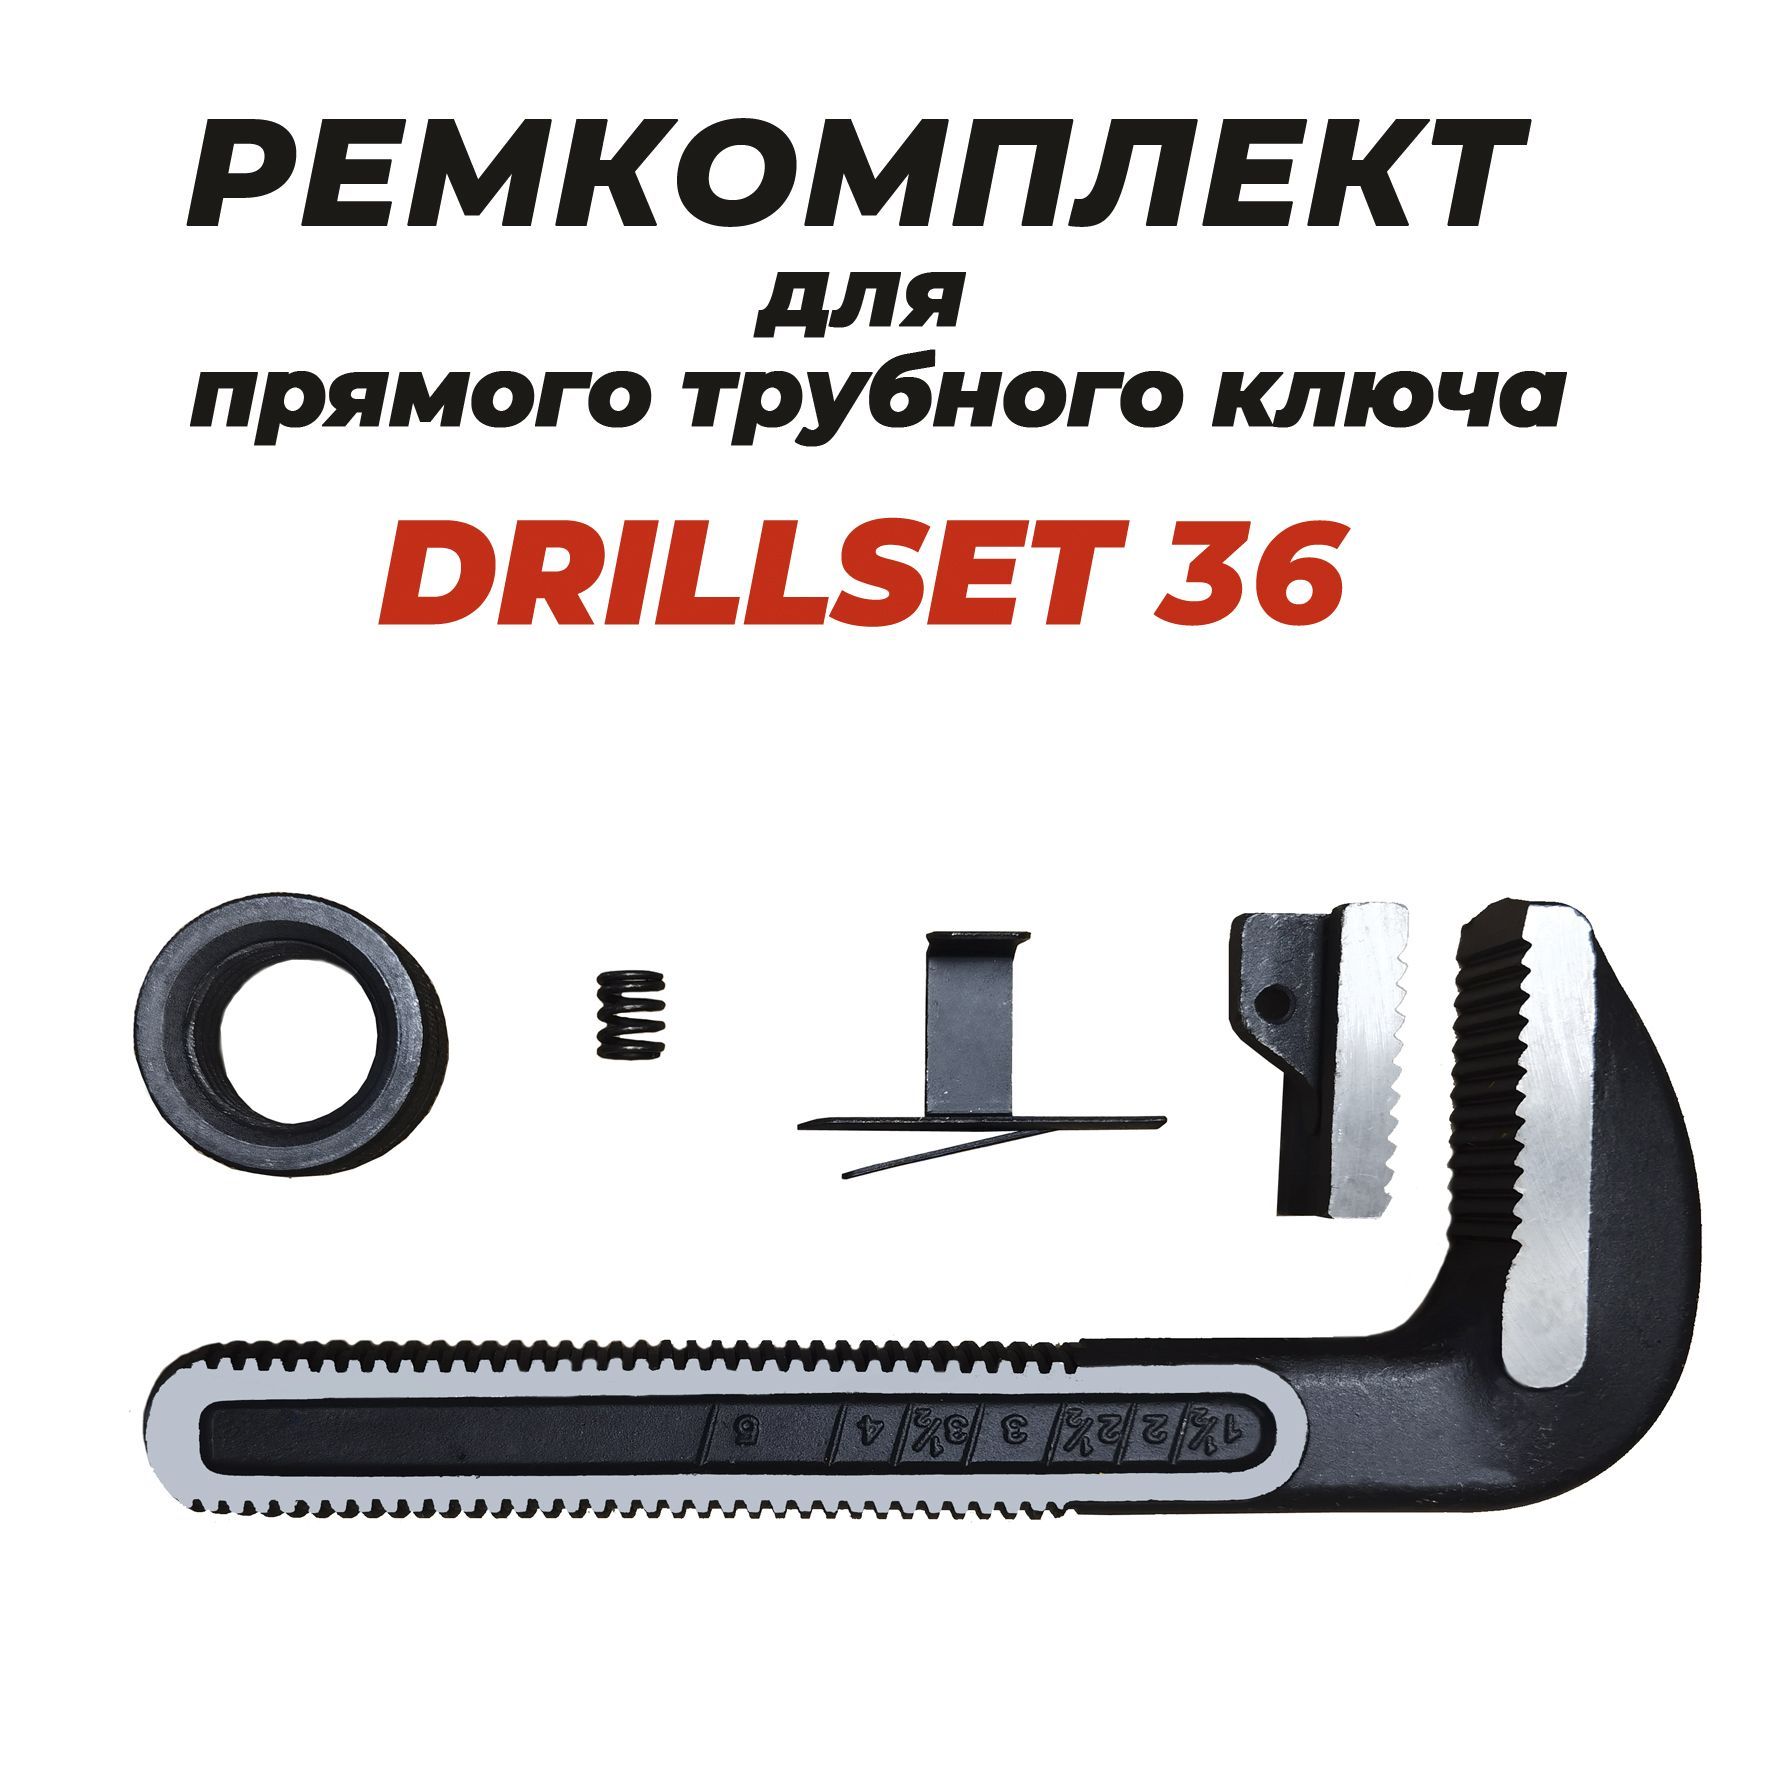 Ремкомплект для прямого трубного ключа DRILLSET36